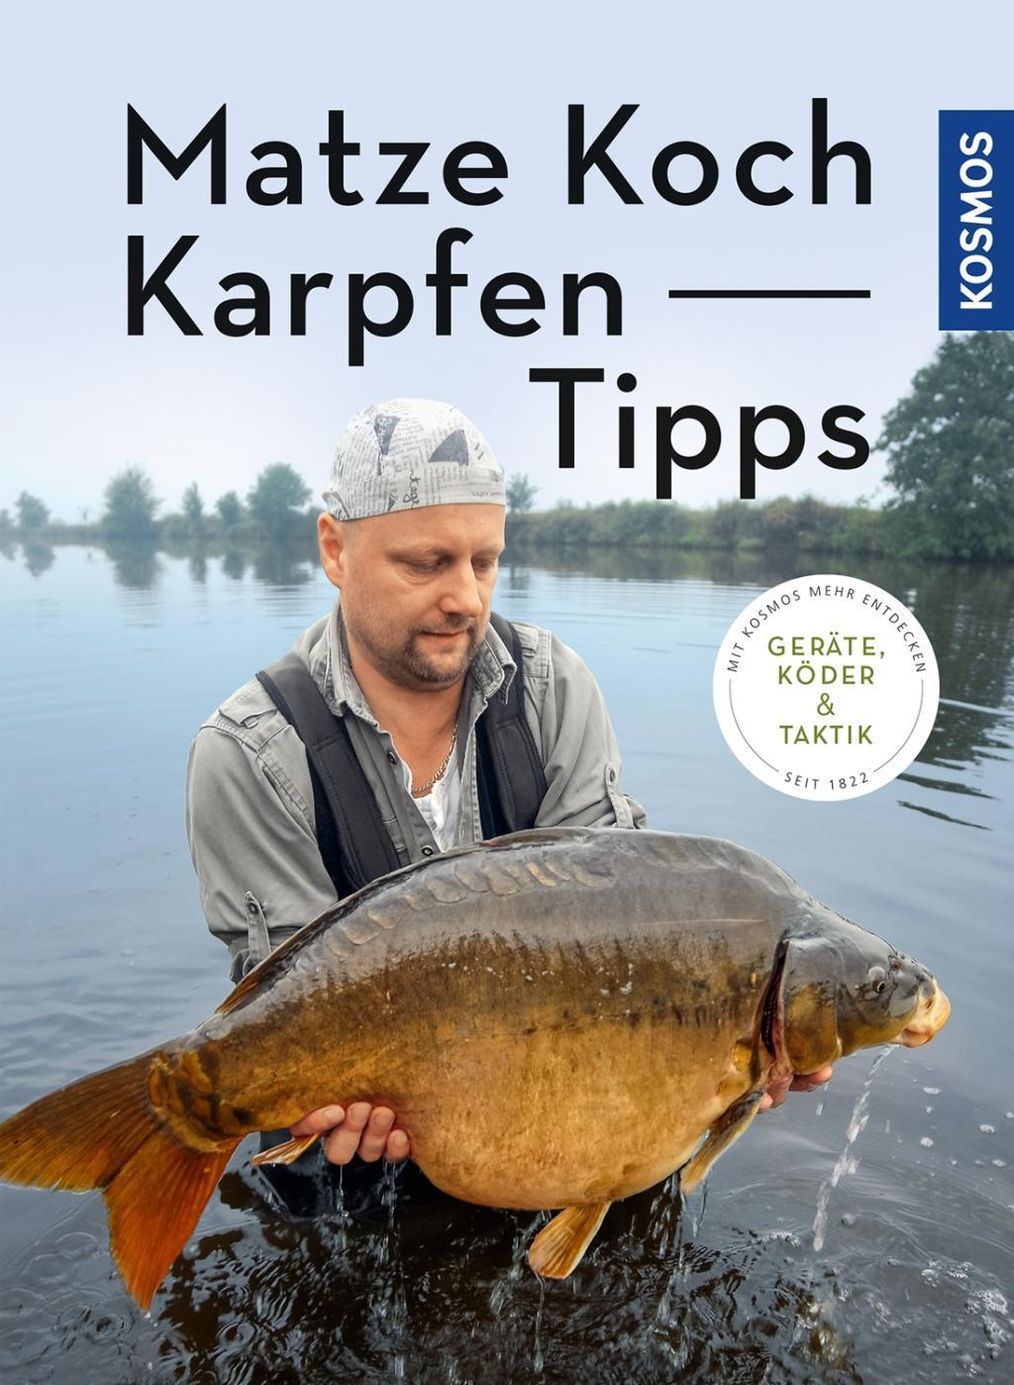 Matze Koch Karpfen-Tipps Buch von Matze Koch versandkostenfrei bestellen